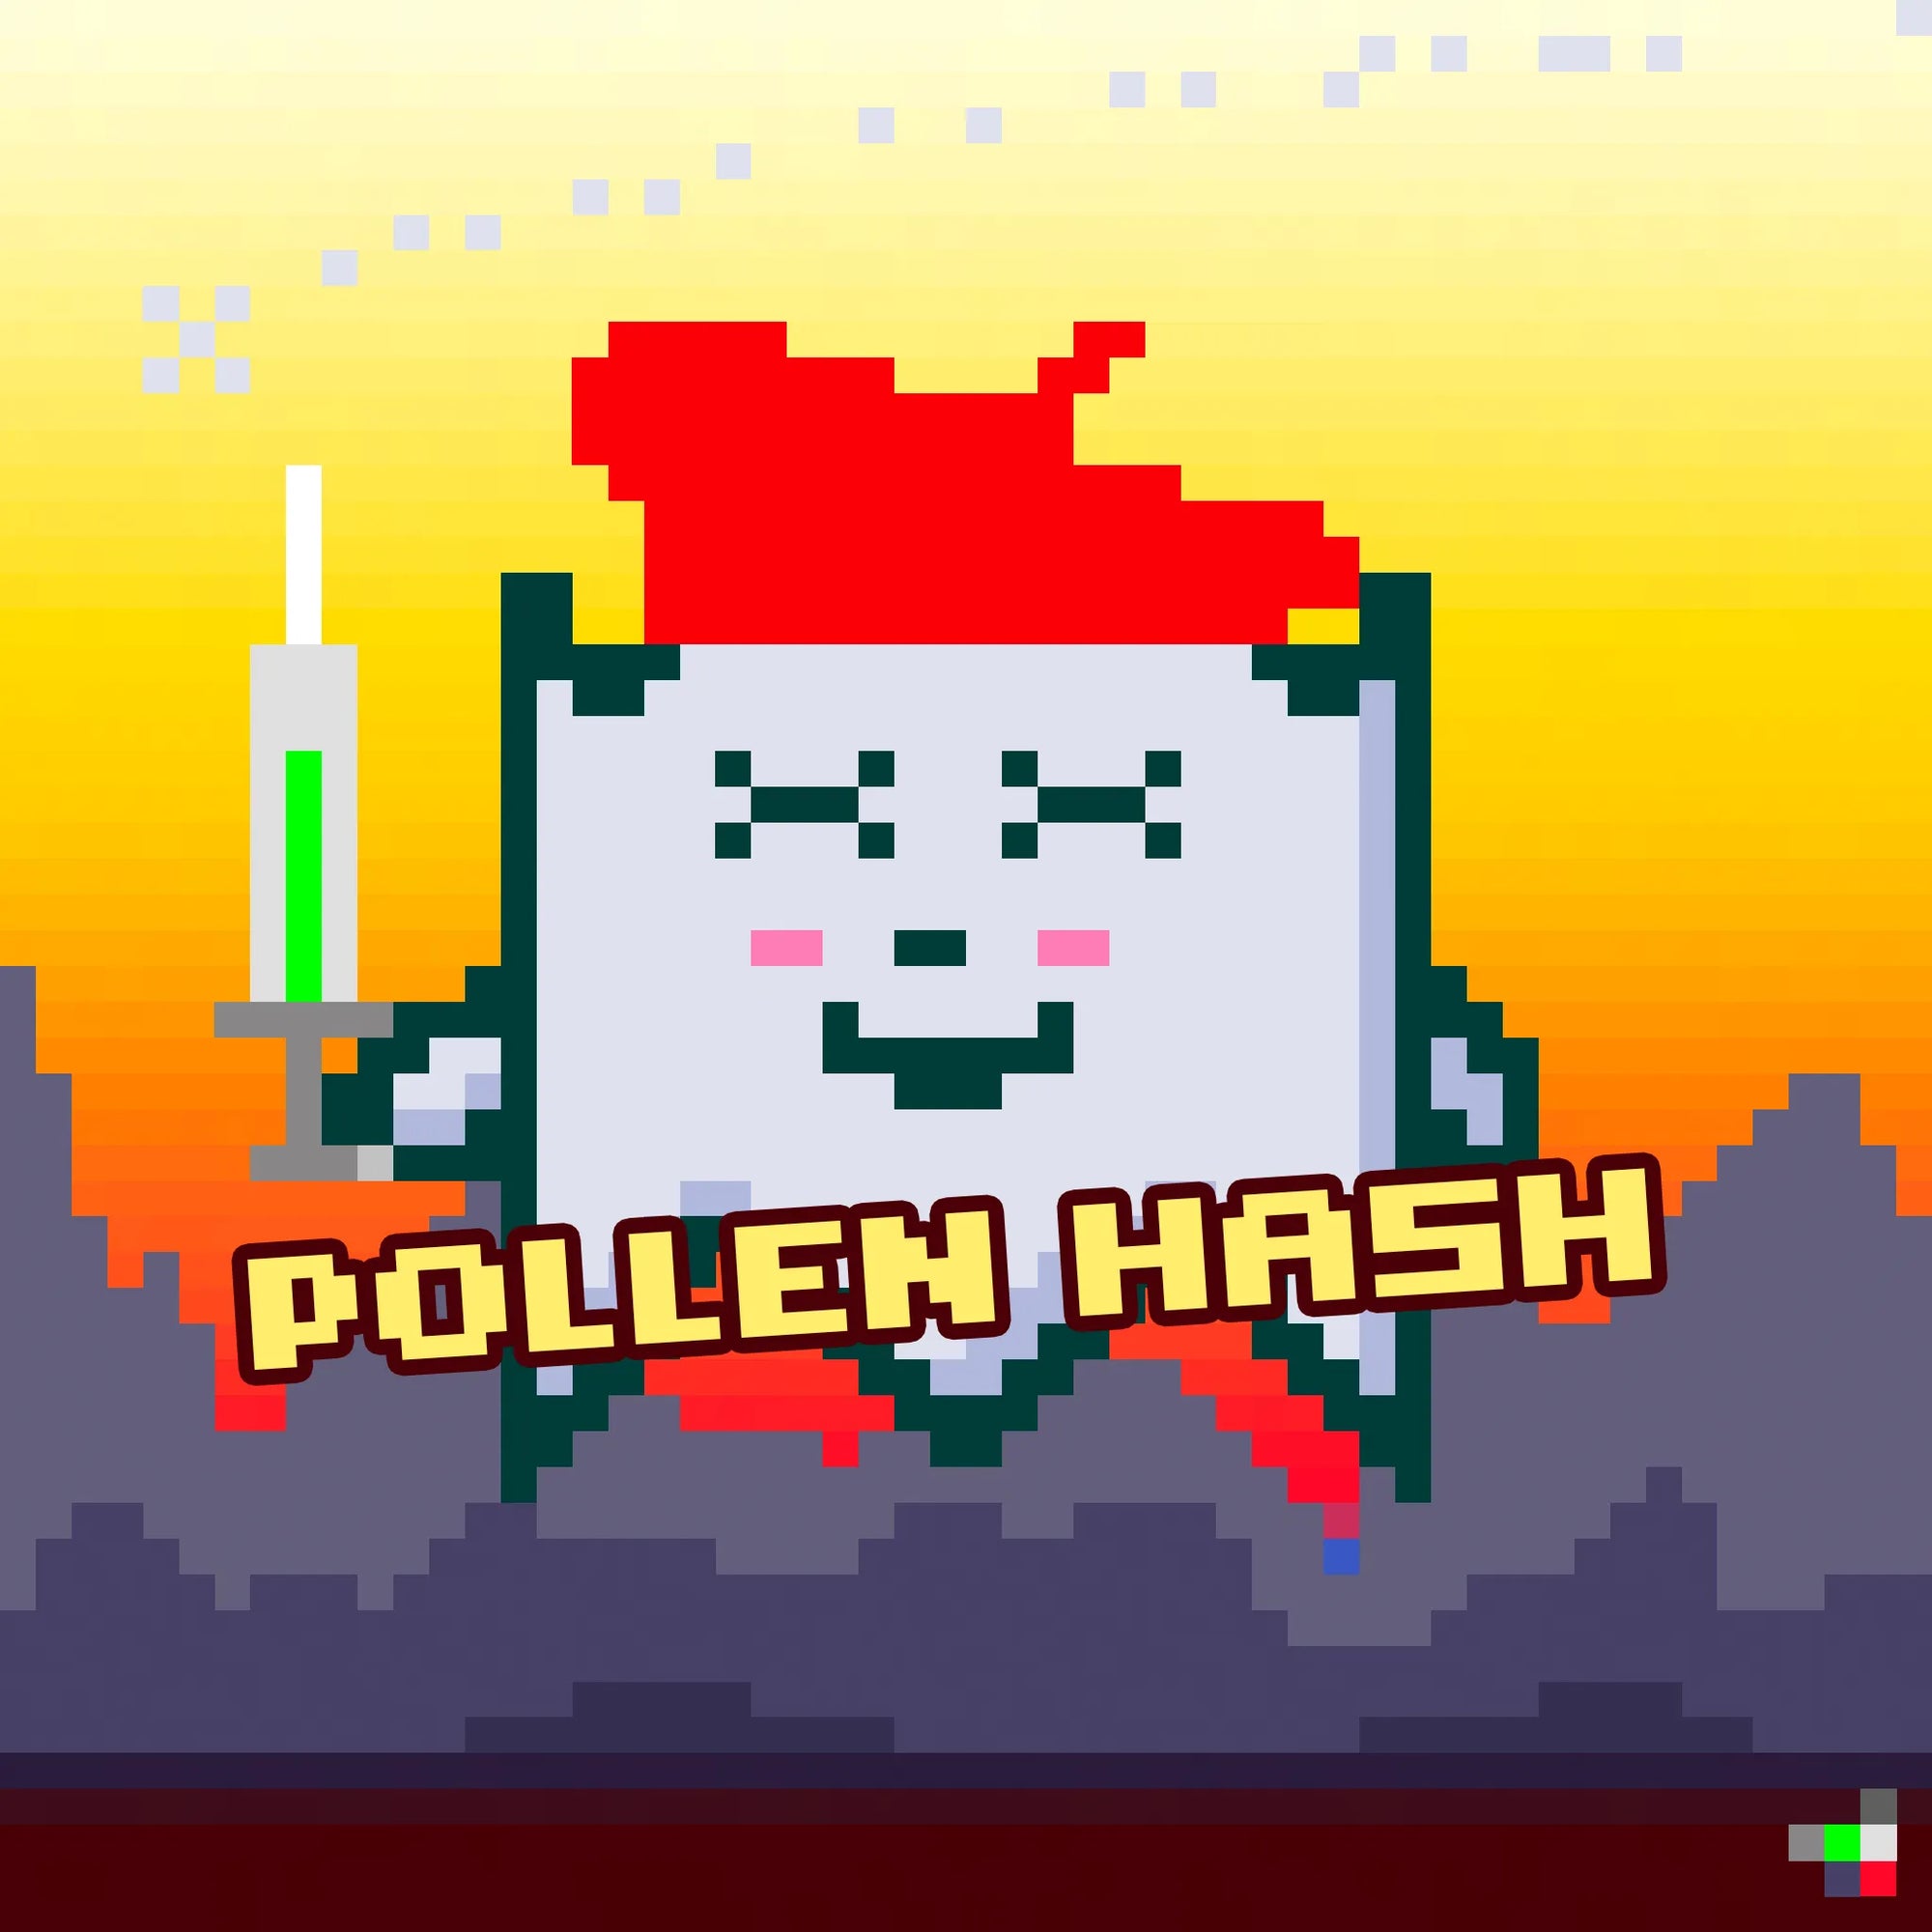 Pollen Hash